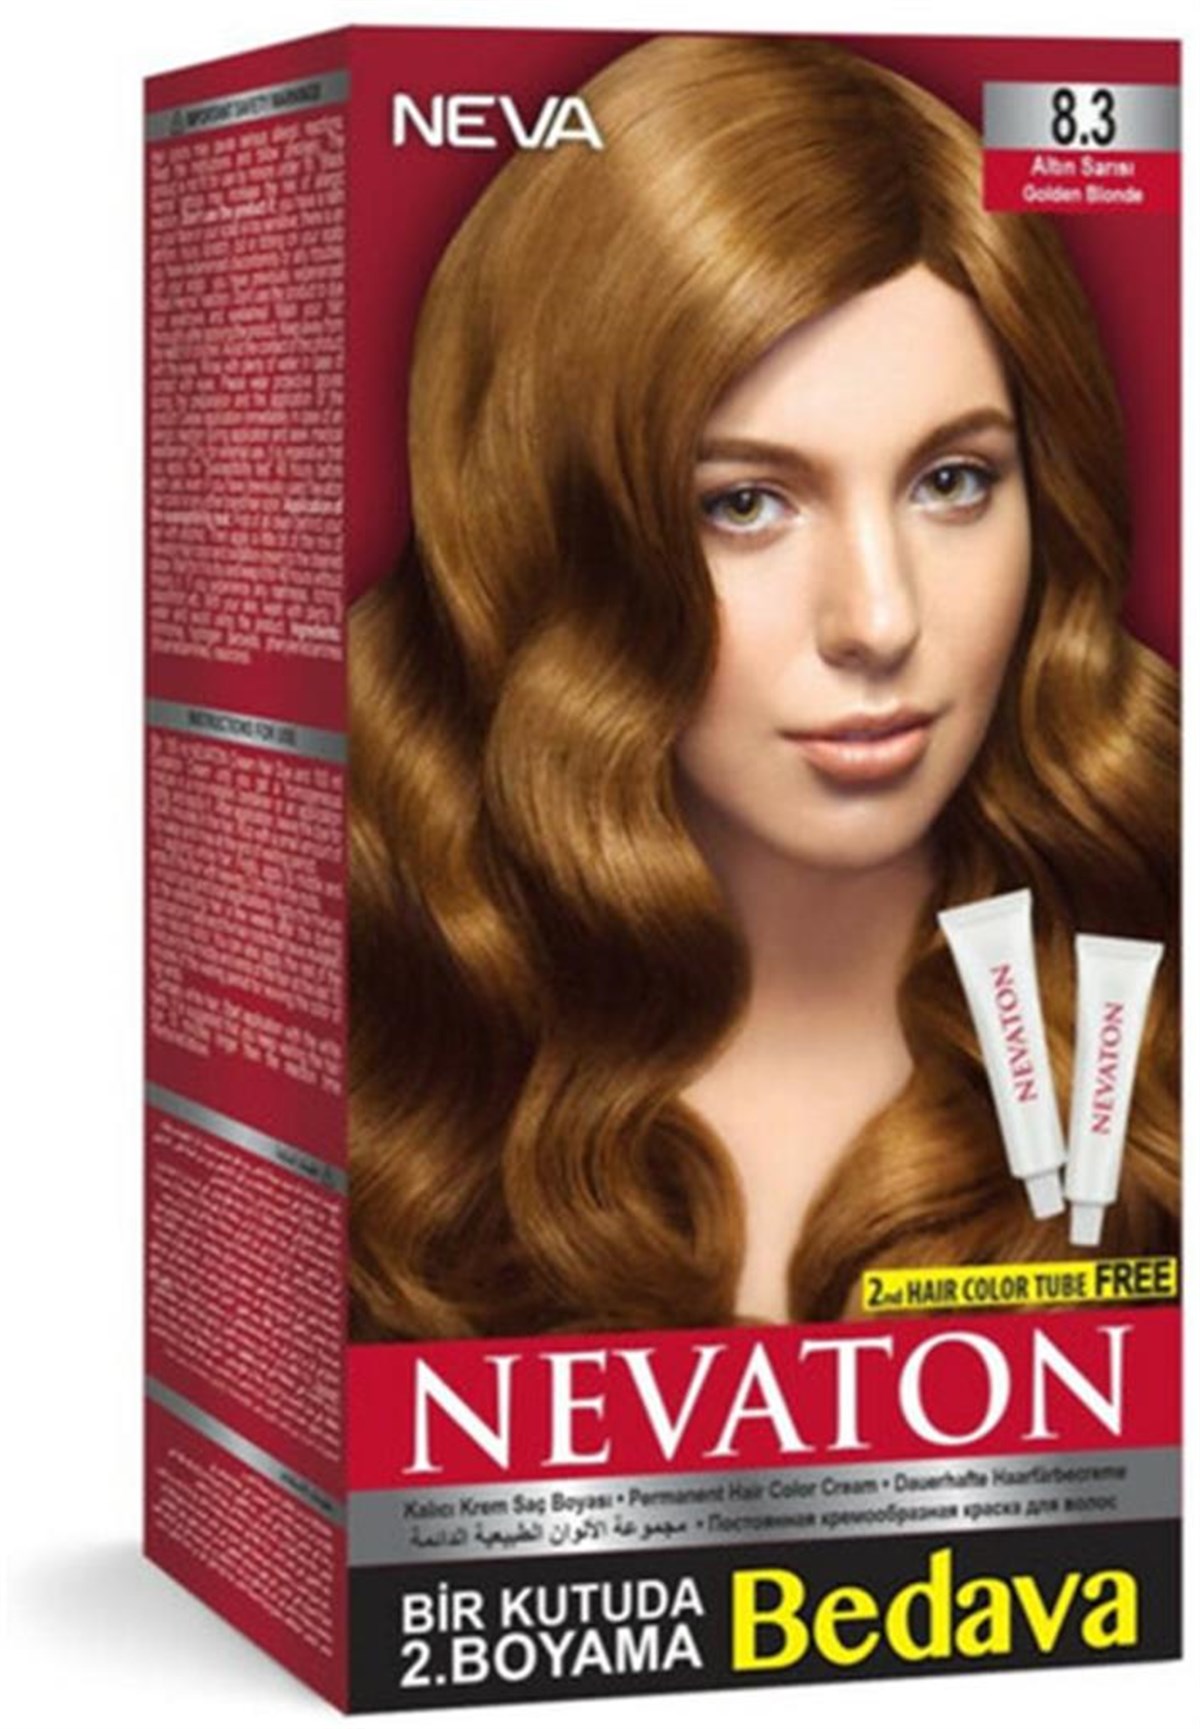 Nevaton Saç Boyası Seti 8.3 Altın Sarısı | Cossta Cosmetic Station